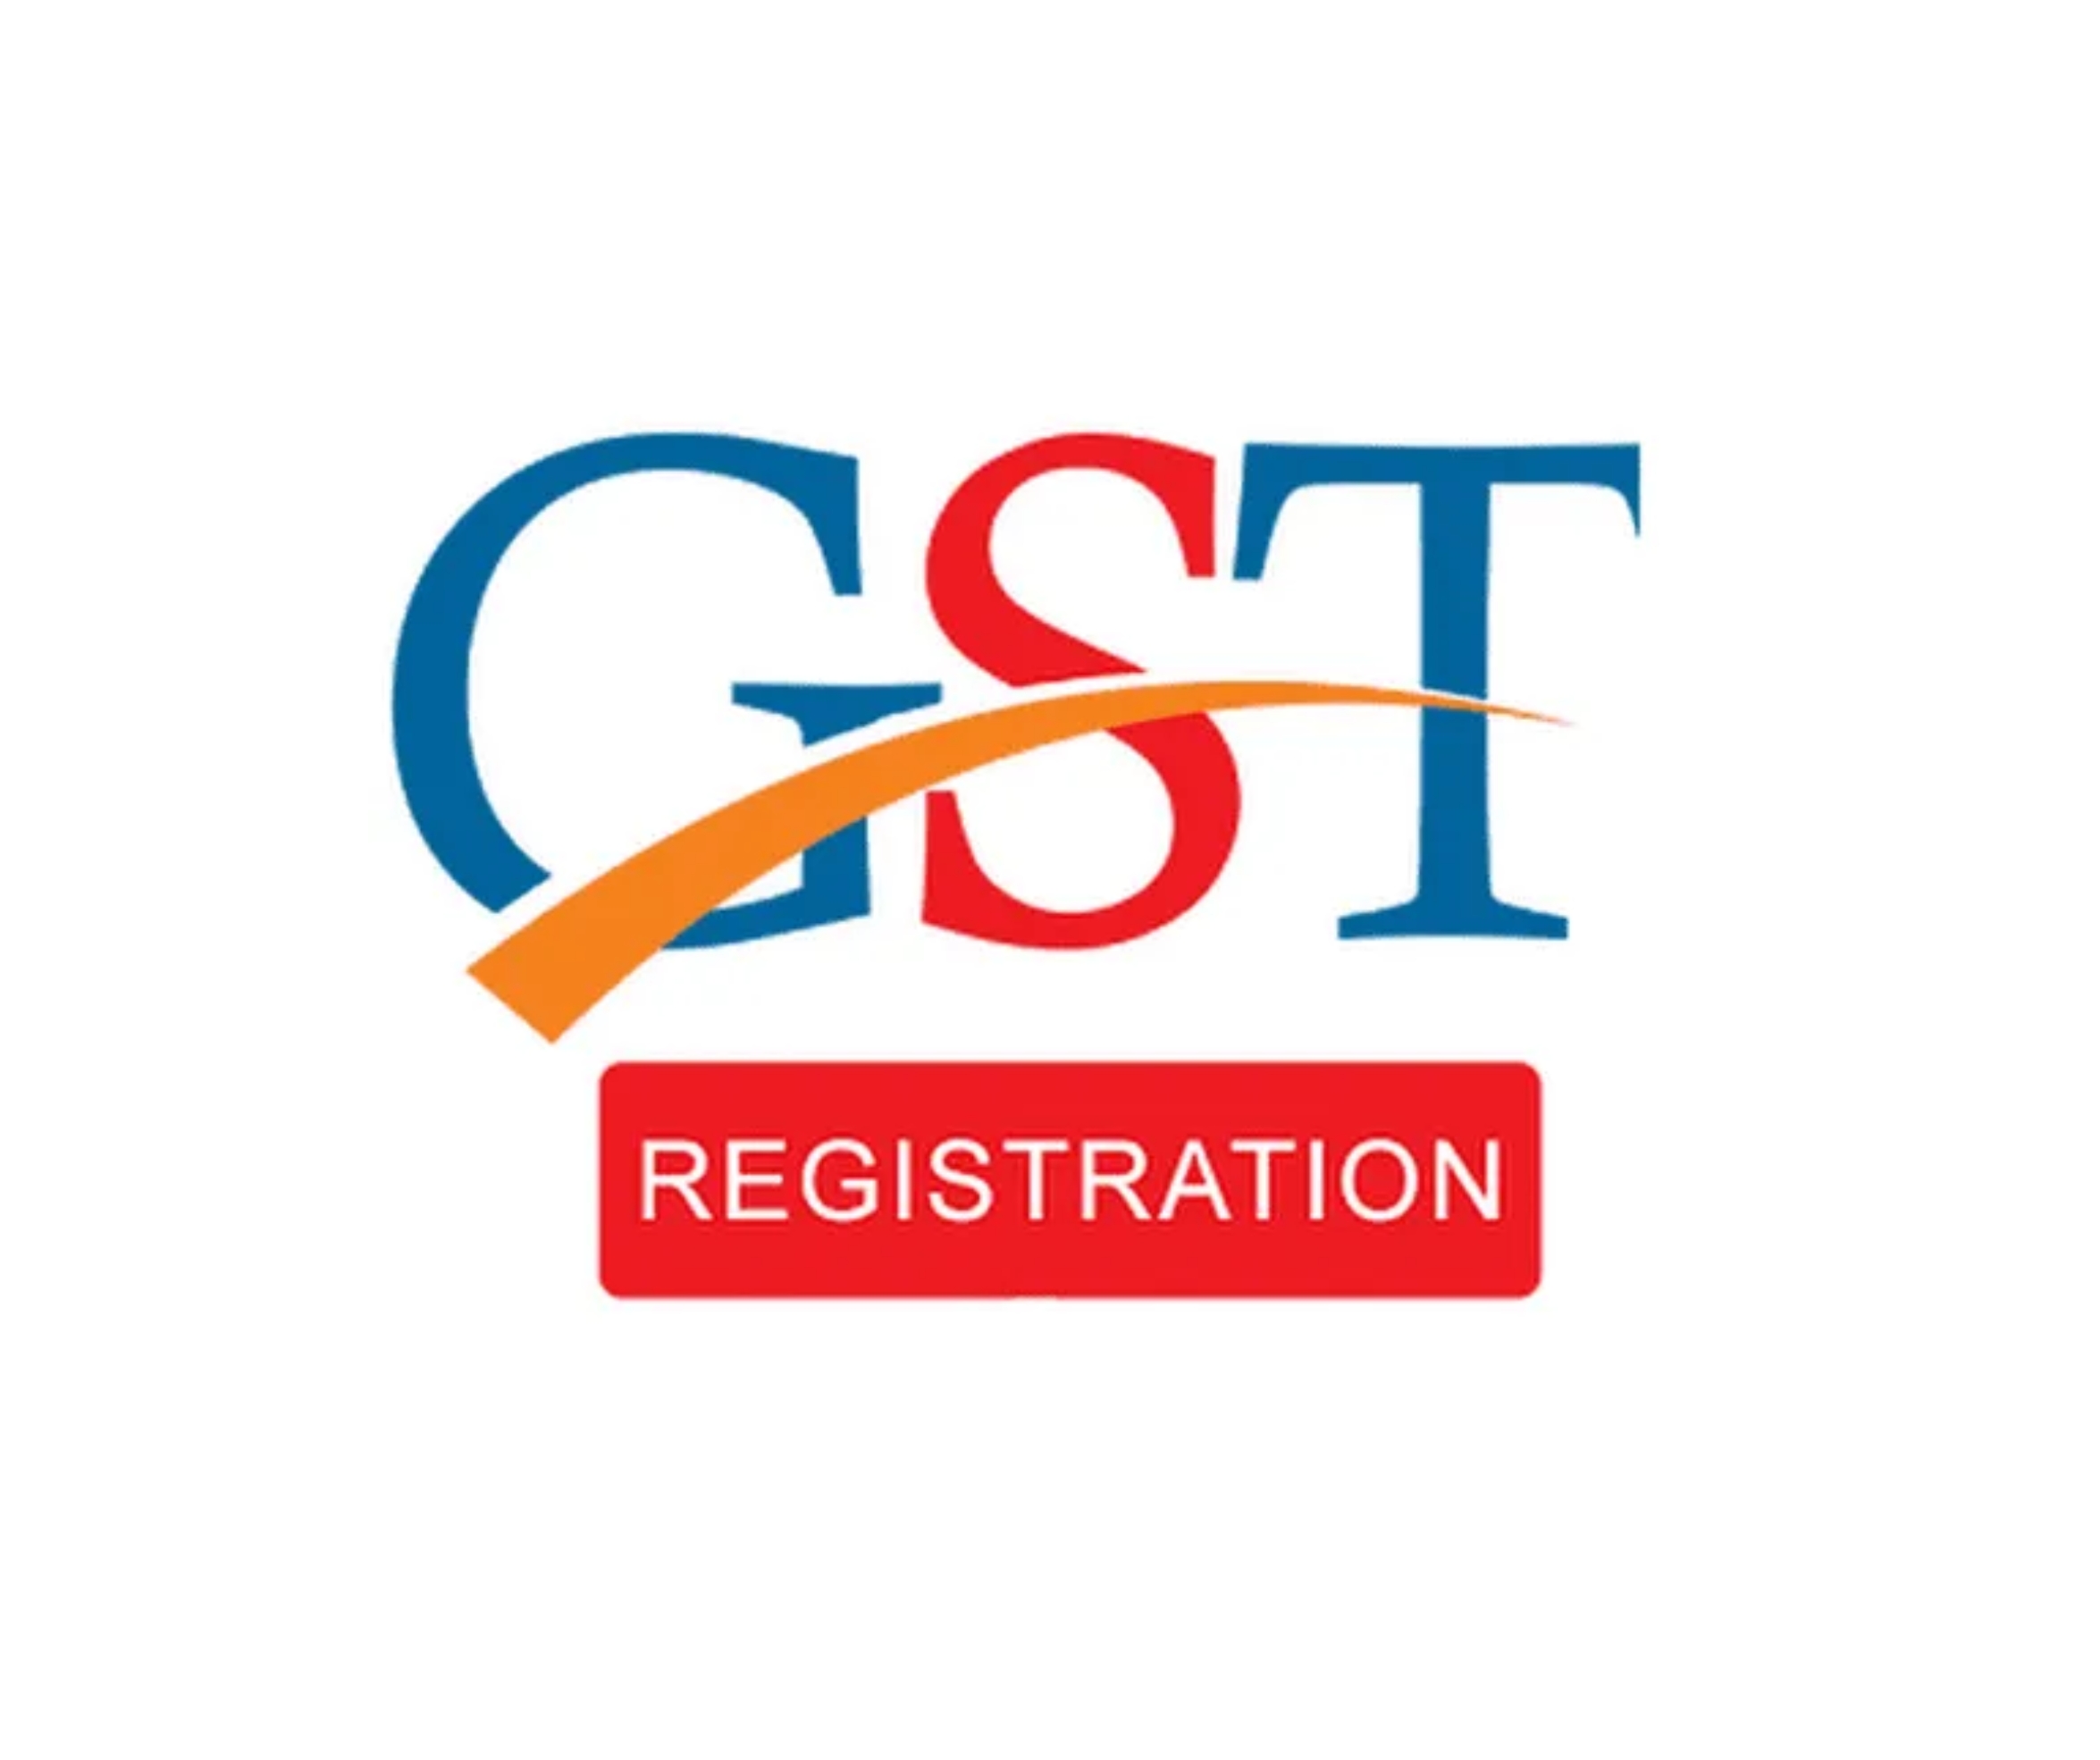 GST registration time